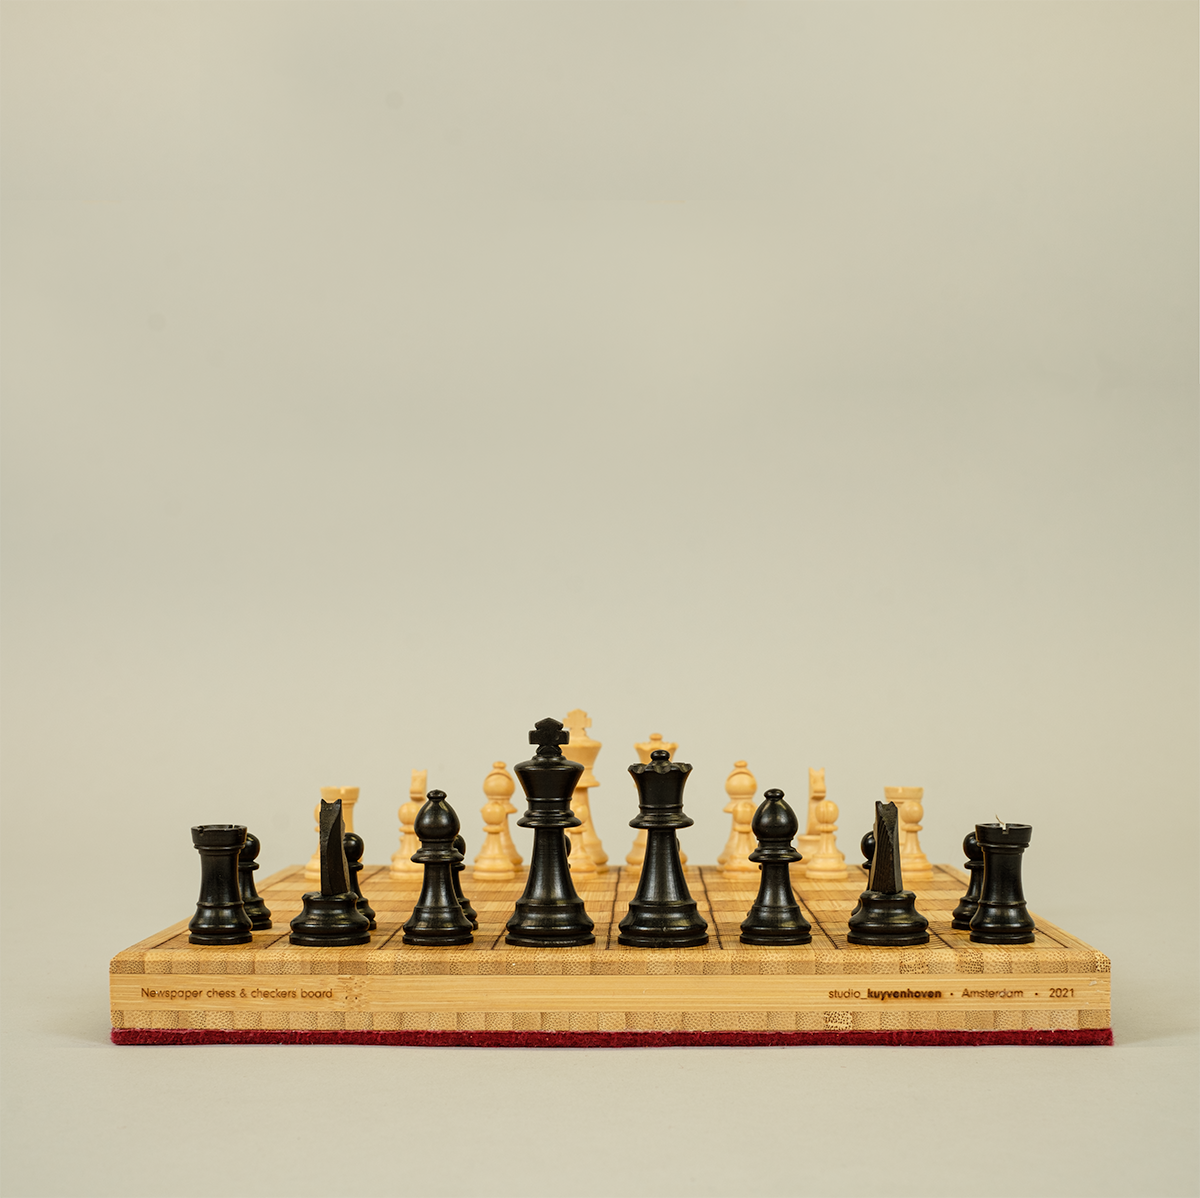 Your second chess book - Zenonchess Ediciones